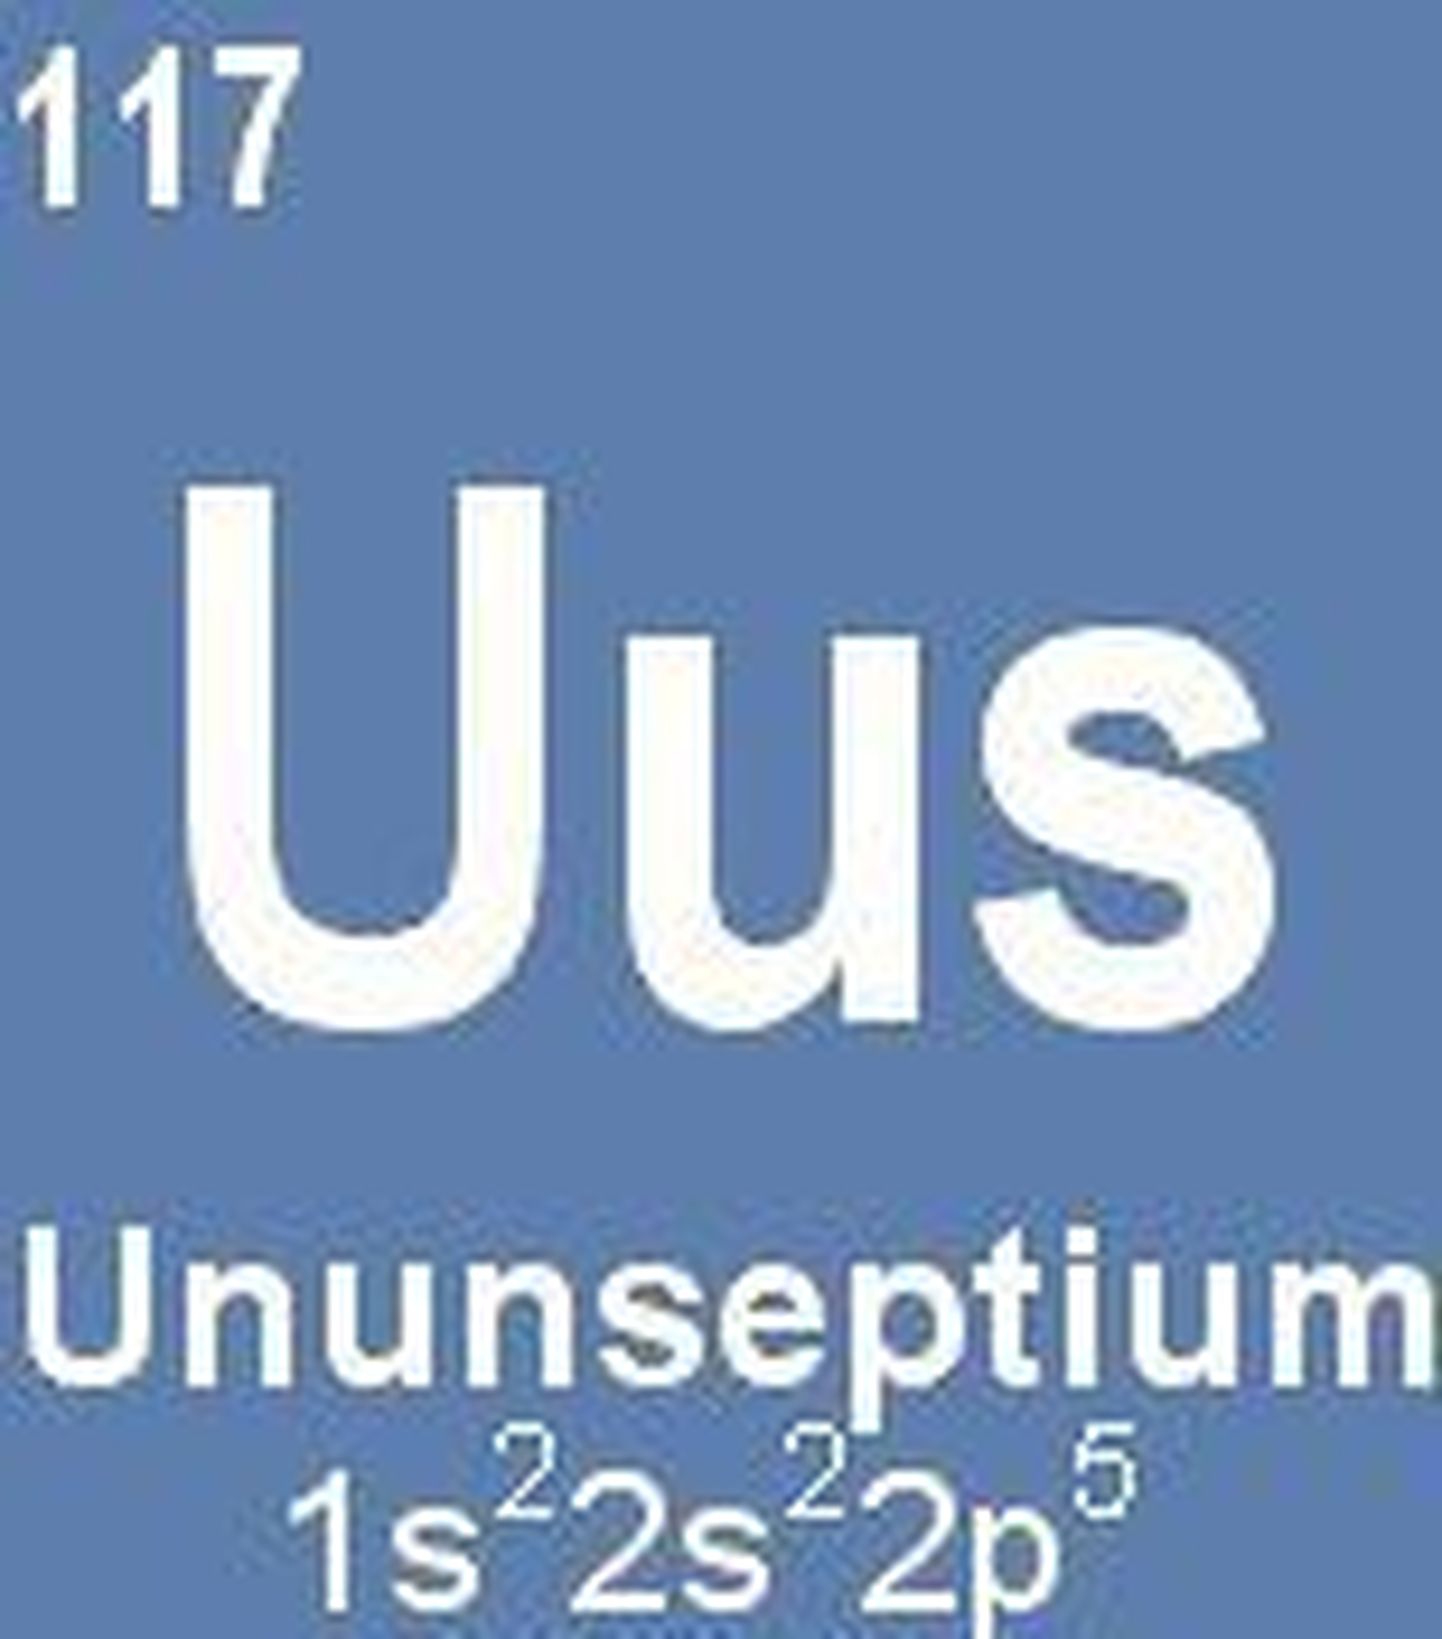 Uus keemiline element kannab nime ununseptium